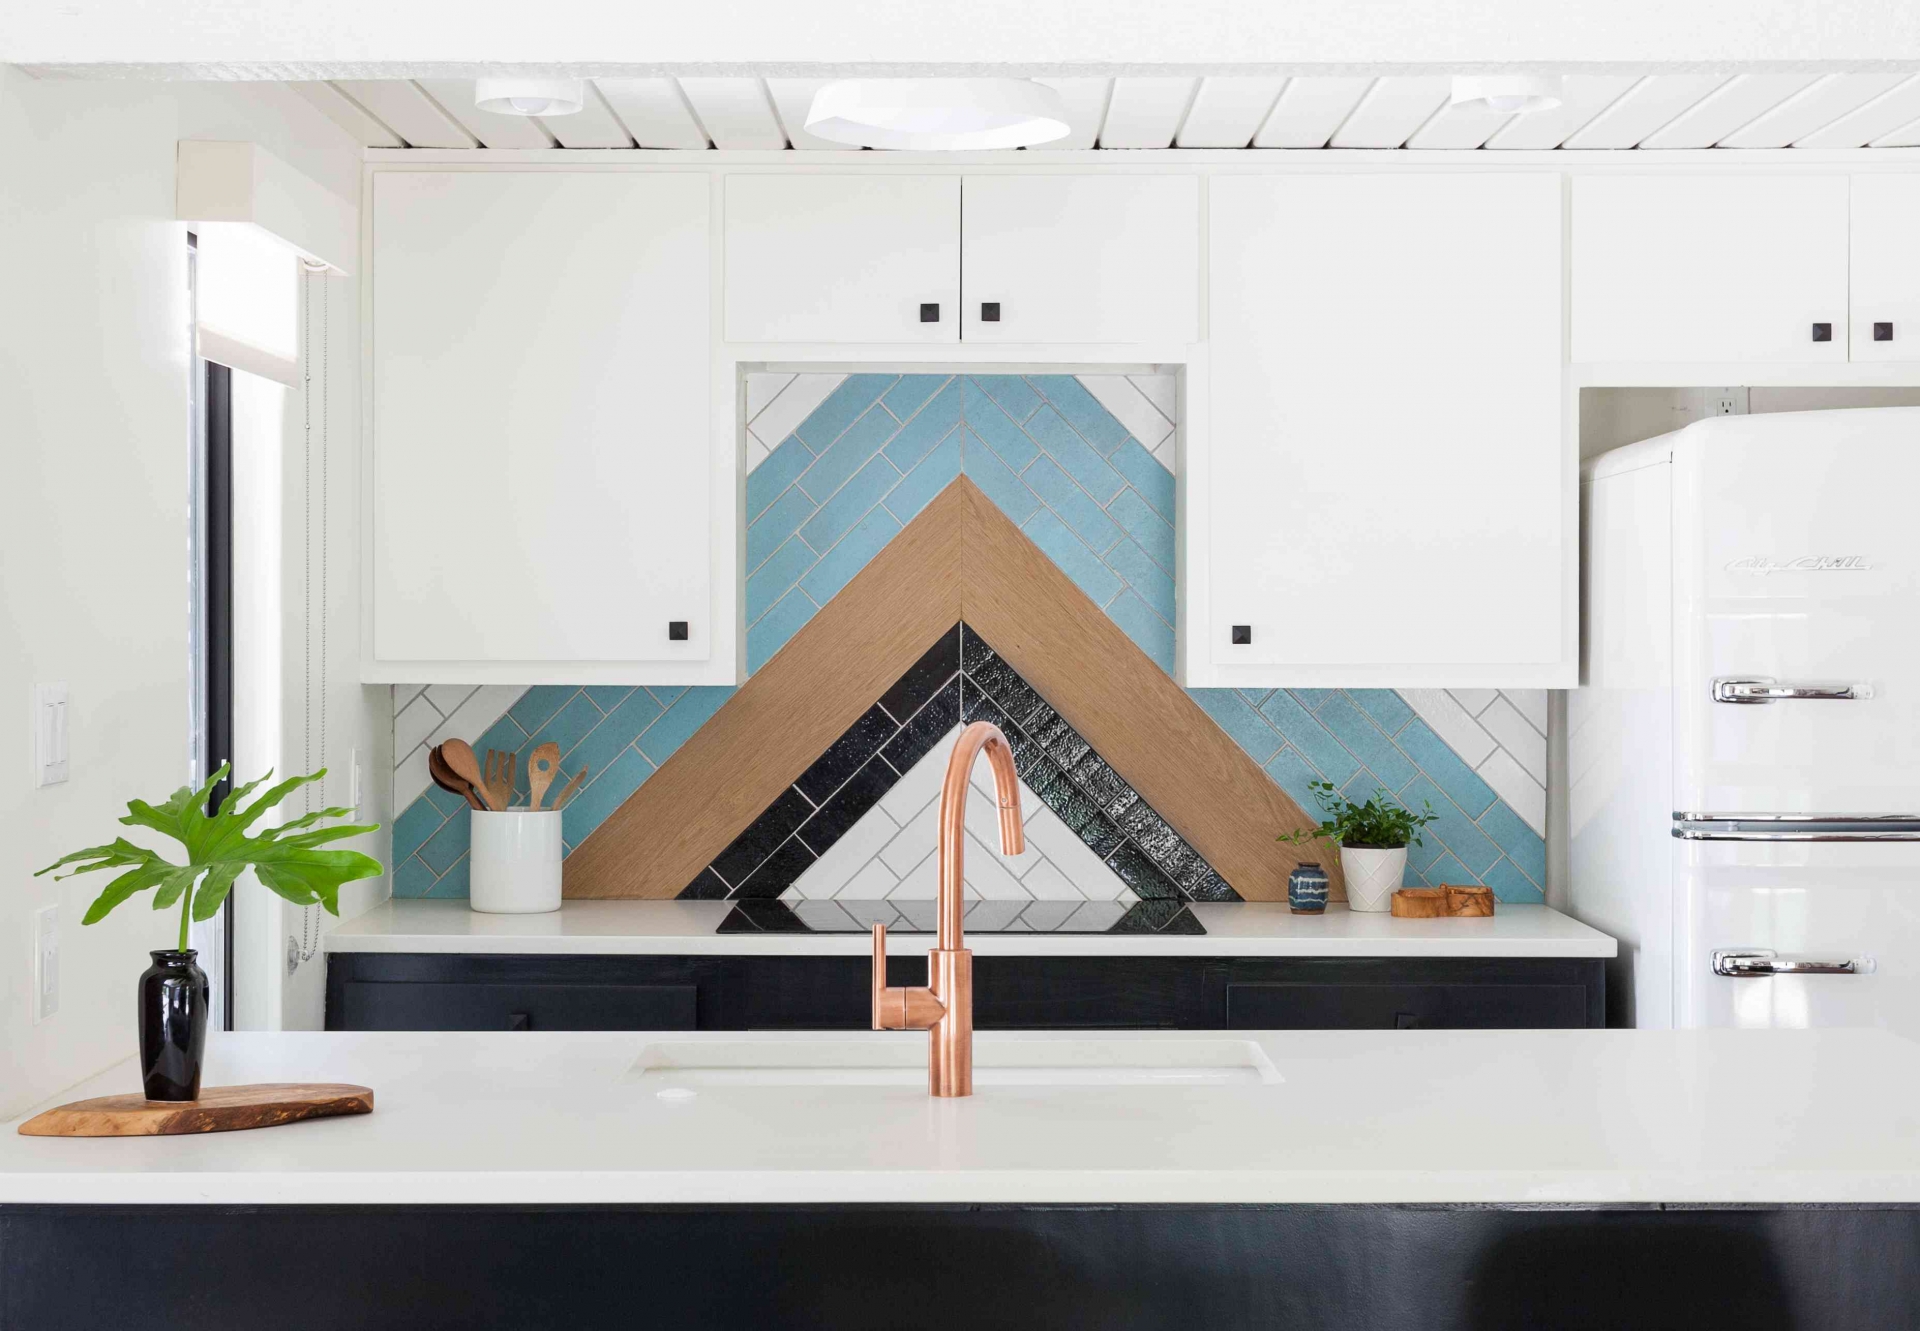 Nhà thiết kế nội thất Erin Williamson đã sử dụng gạch Fireclay với gỗ lót tạo nên một hình ảnh gợi liên tưởng đến đường mái ngói của ngôi nhà. Những sắc màu trắng, đen, xanh dương, gỗ mộc hòa quyện với nhau cho cái nhìn độc đáo.